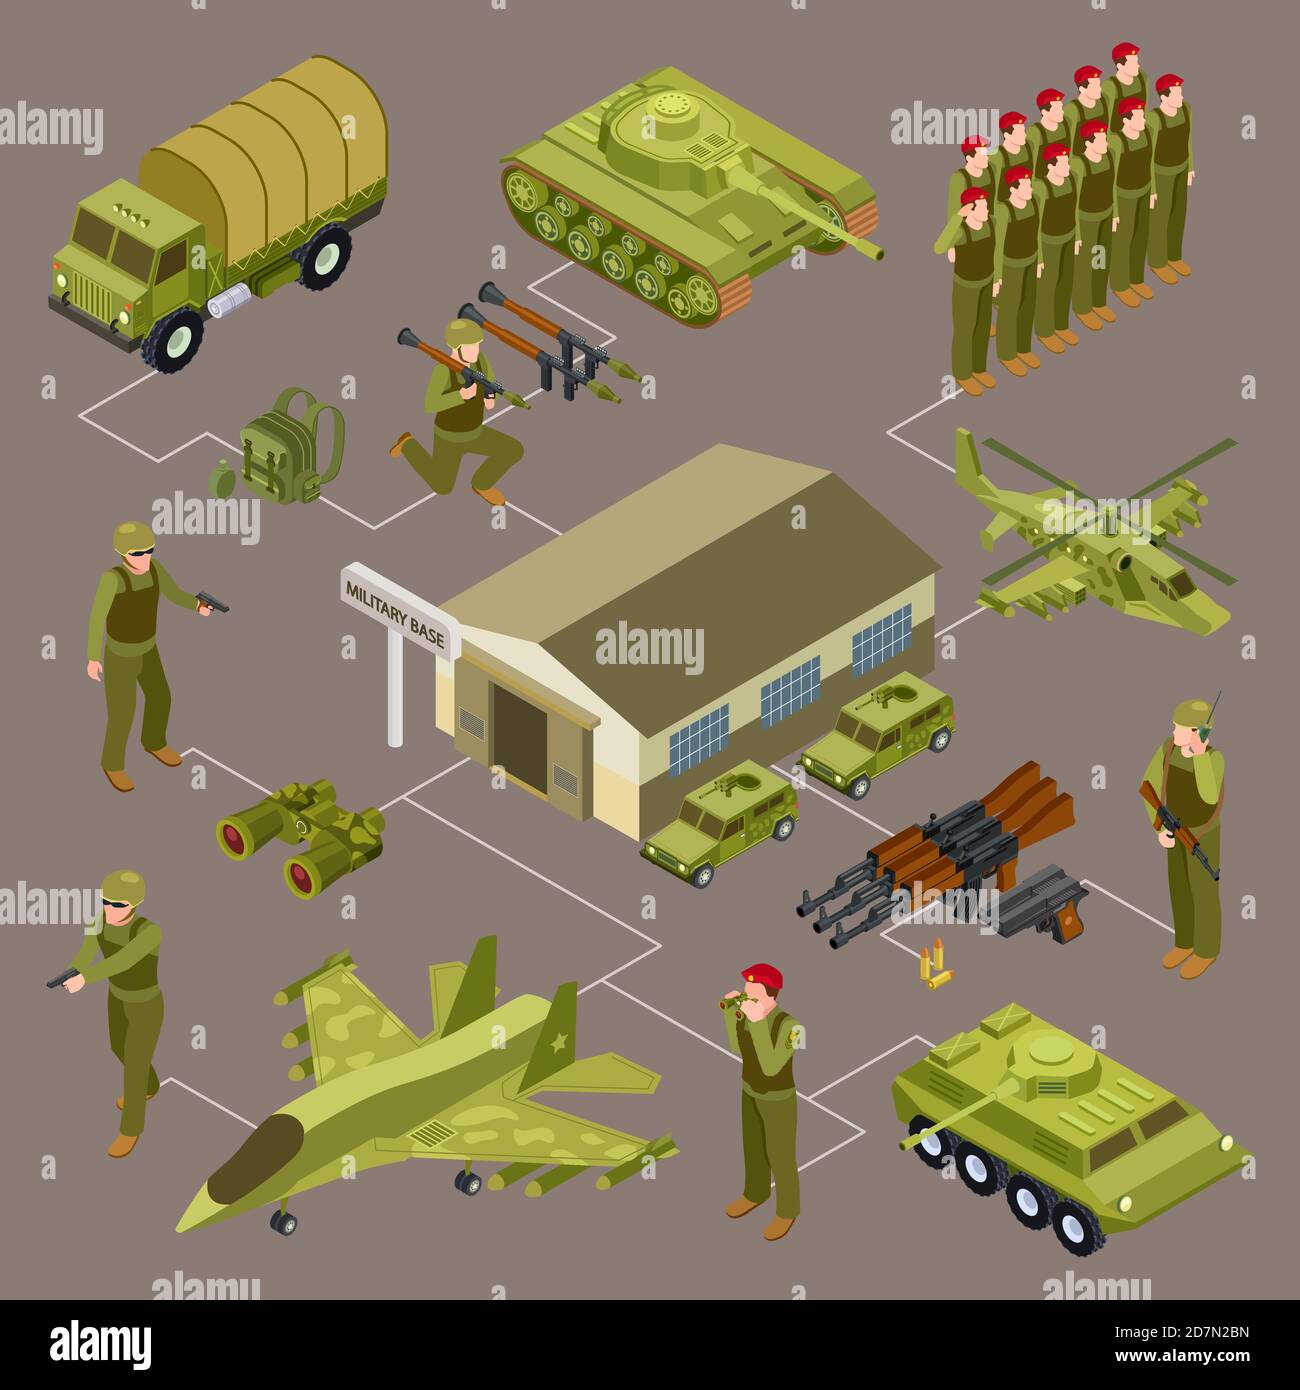 Militärbasis isometrisches Vektor-Konzept mit Soldaten und militärischen Venicles. Illustration der militärischen Waffe, 3d-Transport und Soldat Stock Vektor